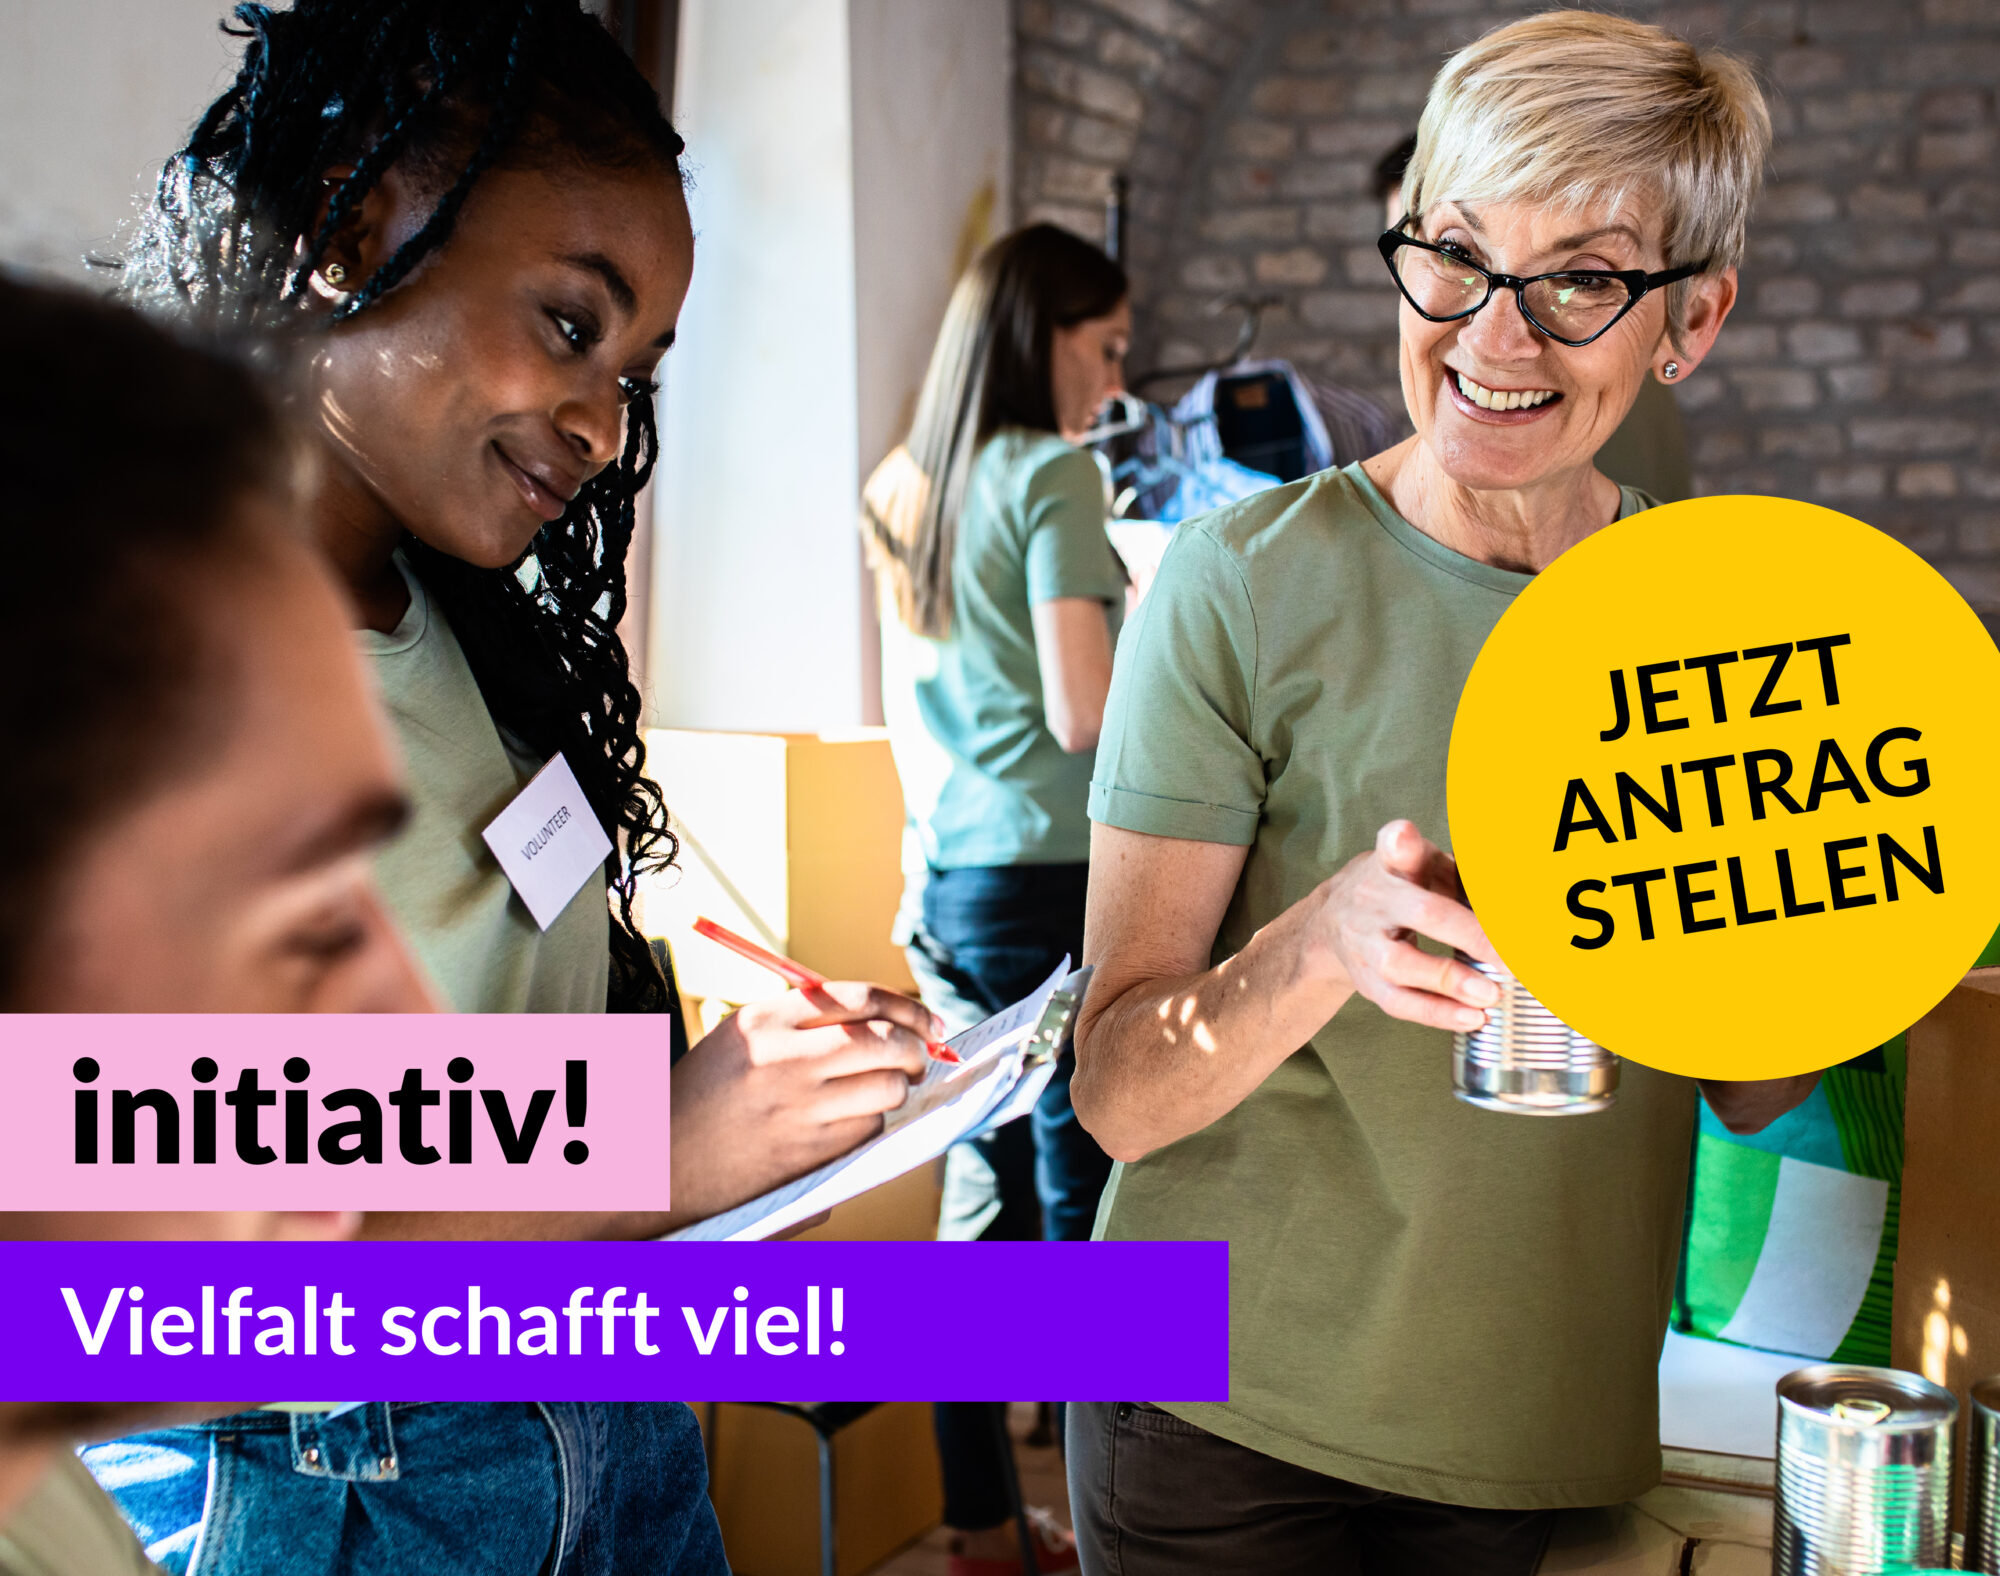 Foto von unterschiedlichen Menschen, die gemeinsam was machen. Gelber runder Störer mit dem Text: Jetzt Antrag stellen. Text: initiativ! Vielfalt schafft viel! d-s-e-e.de